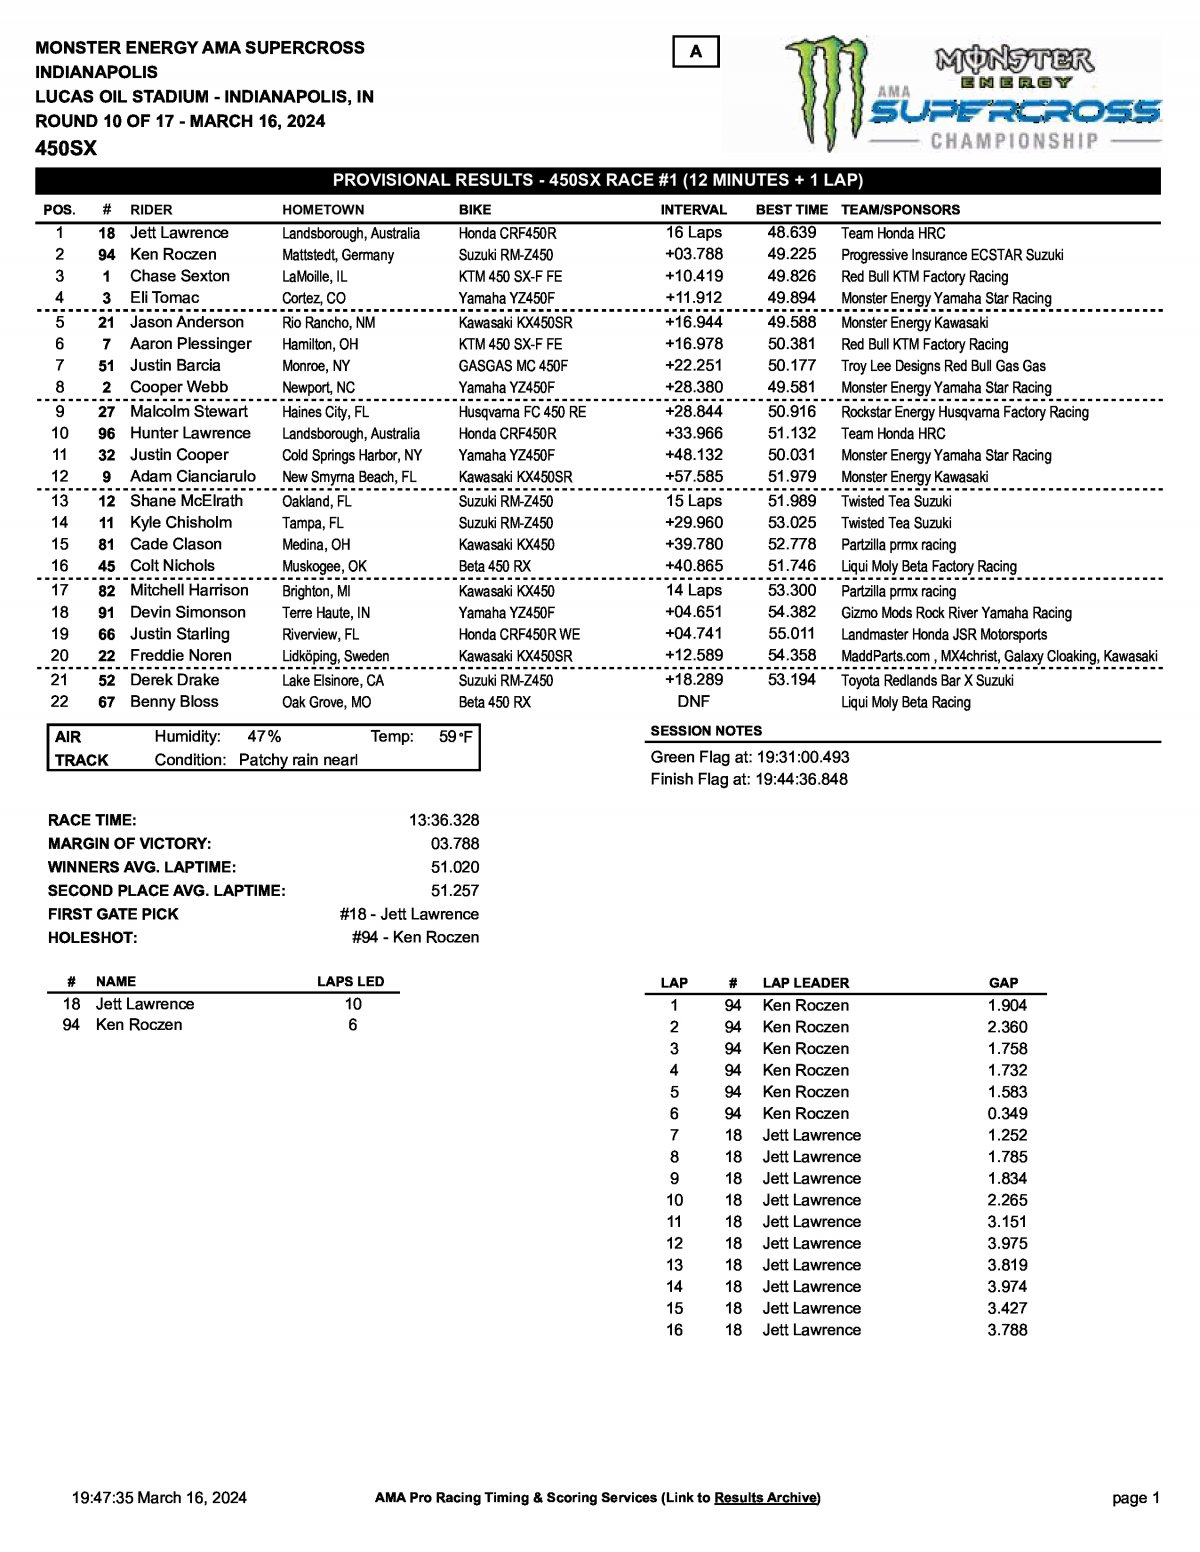 Результаты 1 гонки Тройной Короны Индианаполиса - AMA Supercross 450SX (16/03/2024)